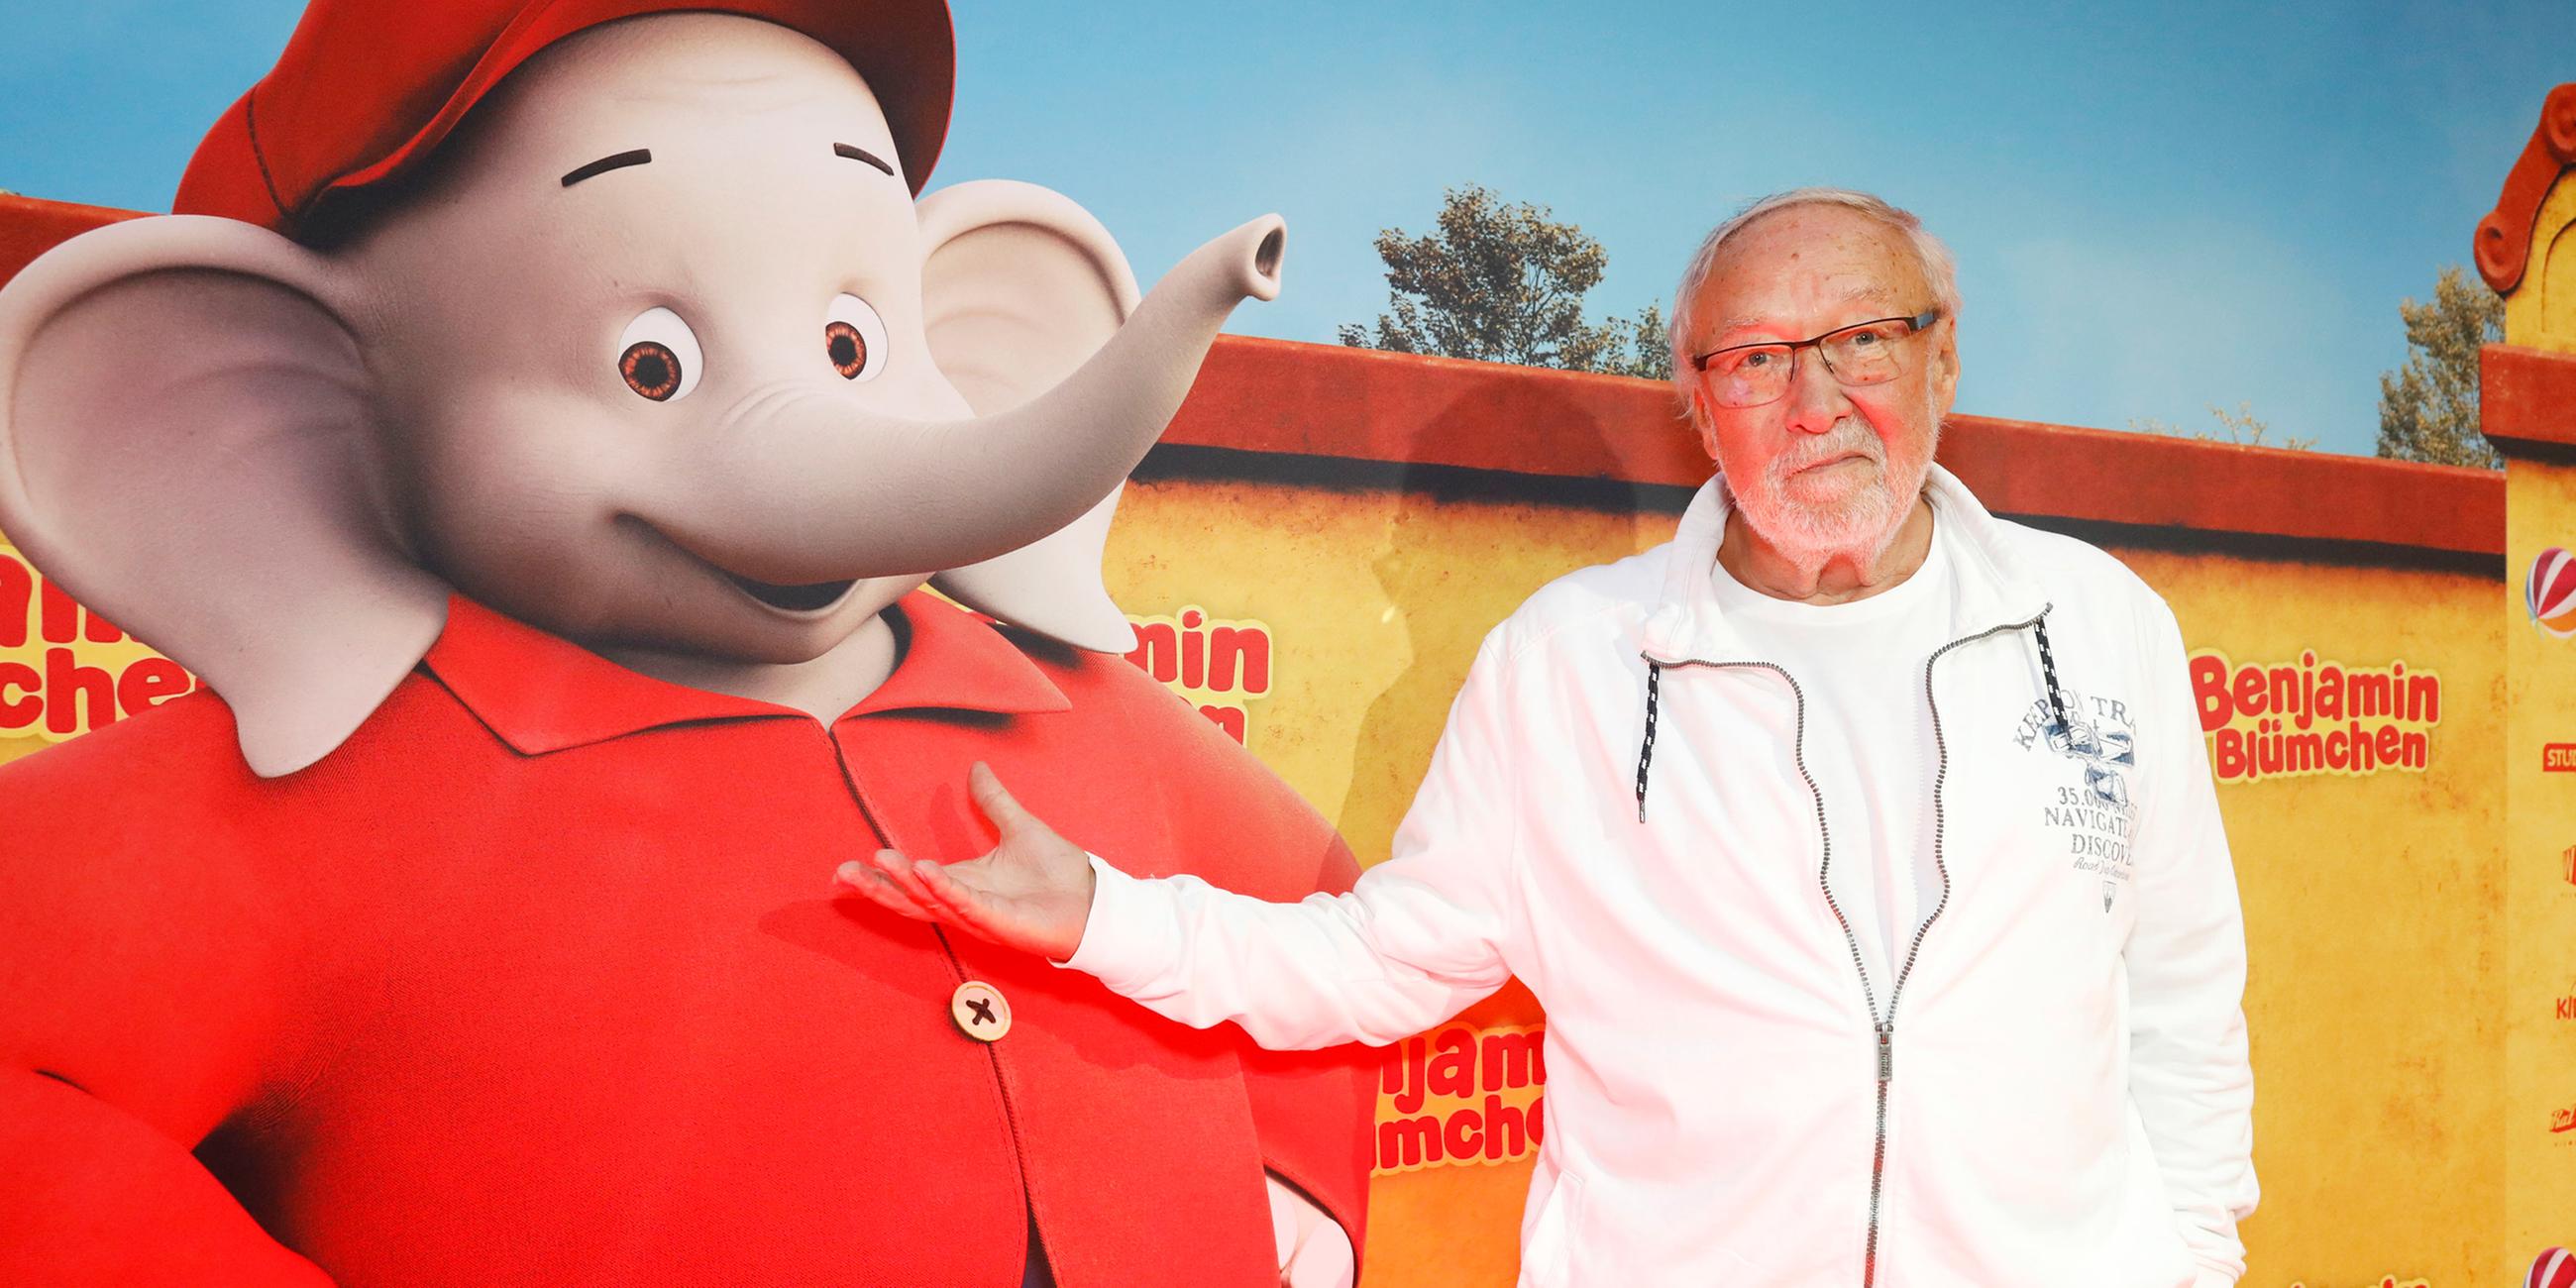 Archiv: Jürgen Kluckert, Synchron- und Hörspielsprecher, steht bei der Premiere des Kinofilms "Benjamin Blümchen" neben dem Elefanten im Mathäser Filmpalast. (21.07.2019)